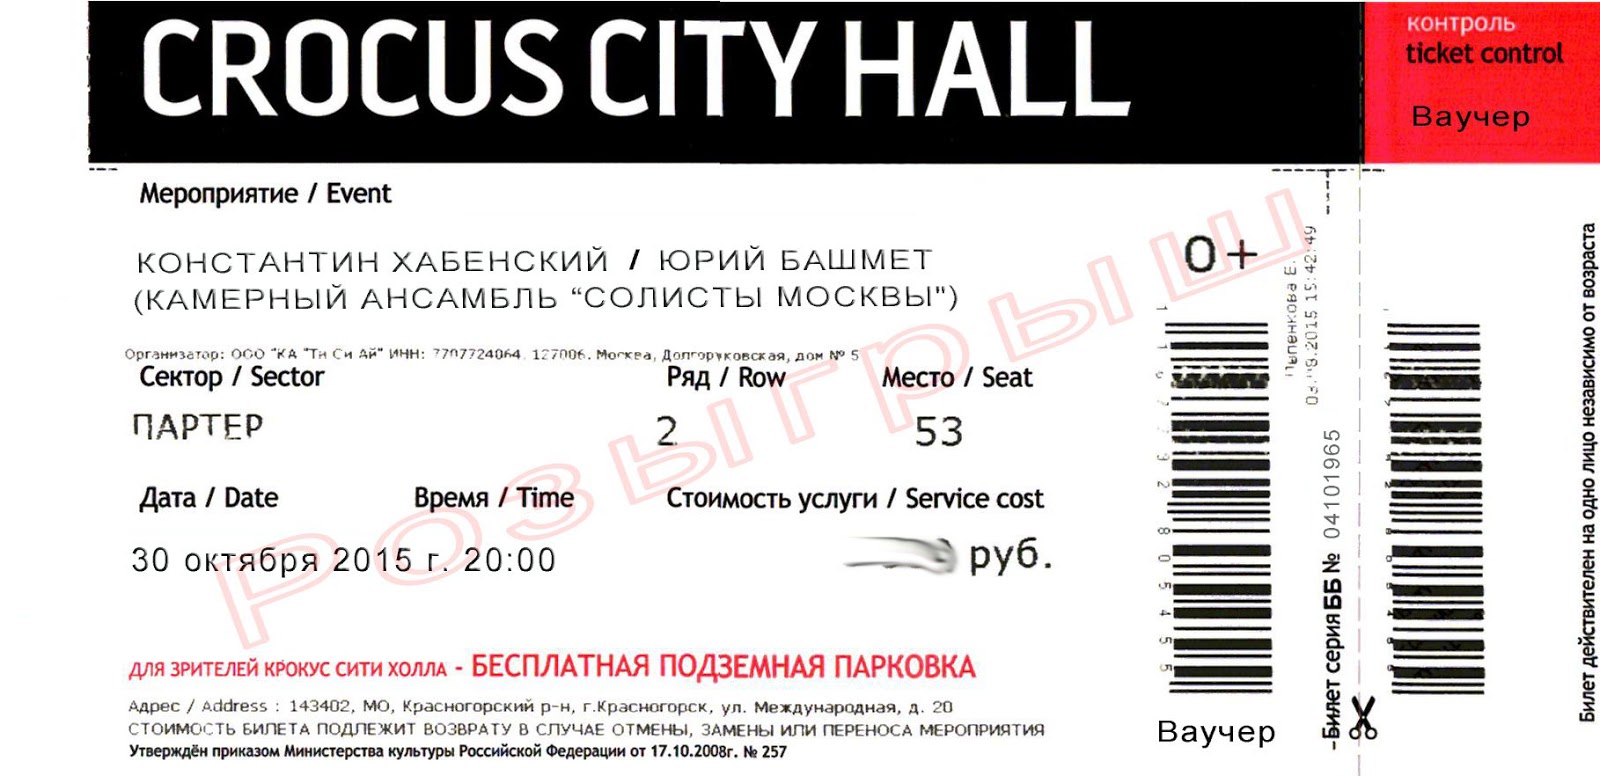 Крокус сити холл билеты на концерт. Электронный билет Крокус Сити Холл. Крокус Сити Холл билеты. Билет в Крокус Сити Холл на концерт. Крокус билеты.